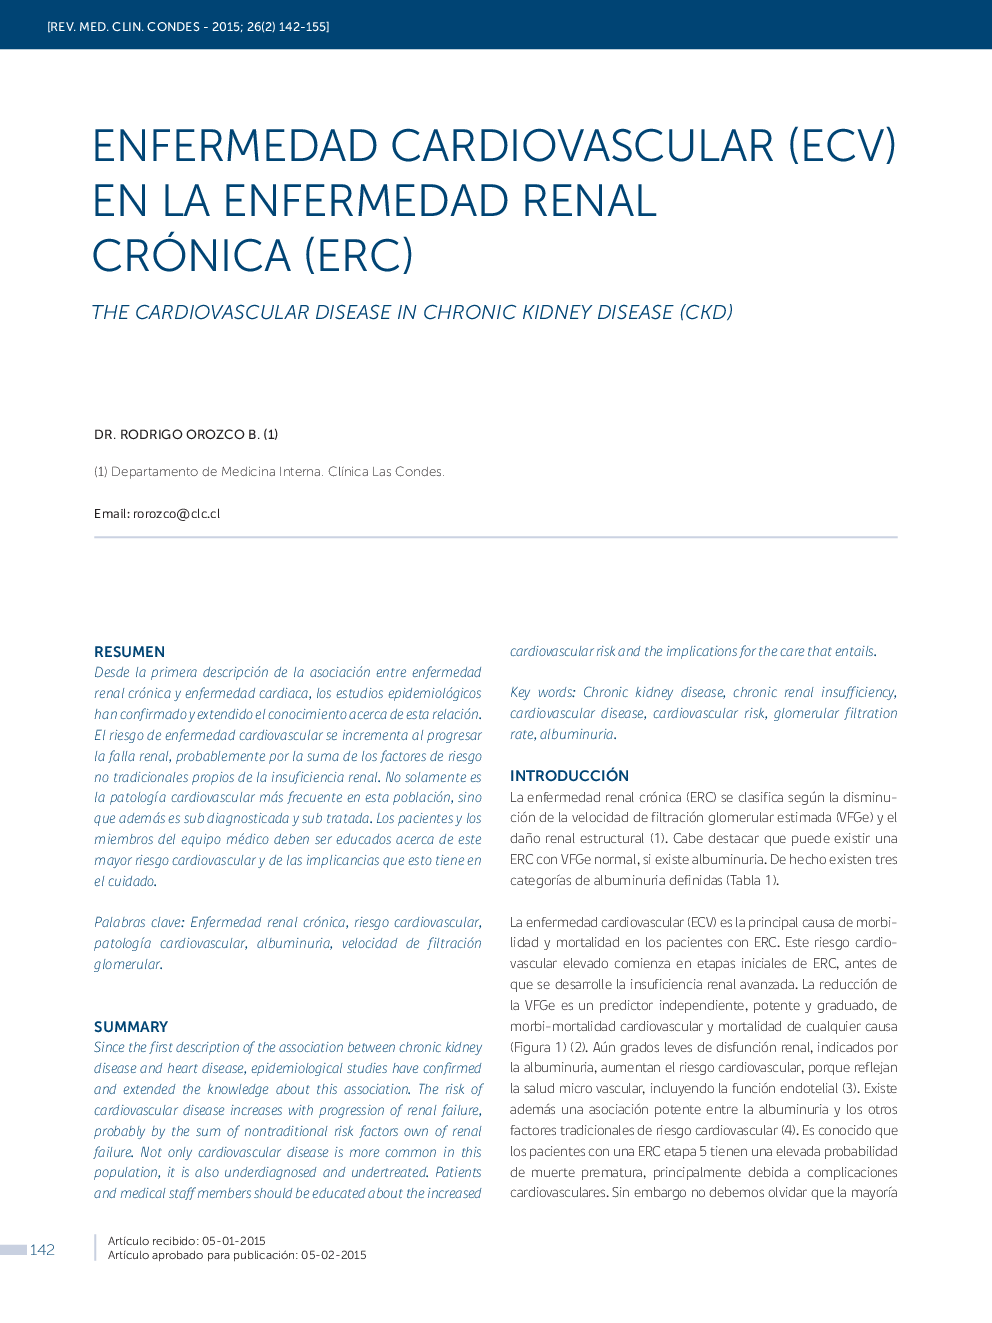 ENFERMEDAD CARDIOVASCULAR (ECV) EN LA ENFERMEDAD RENAL CRÓNICA (ERC)